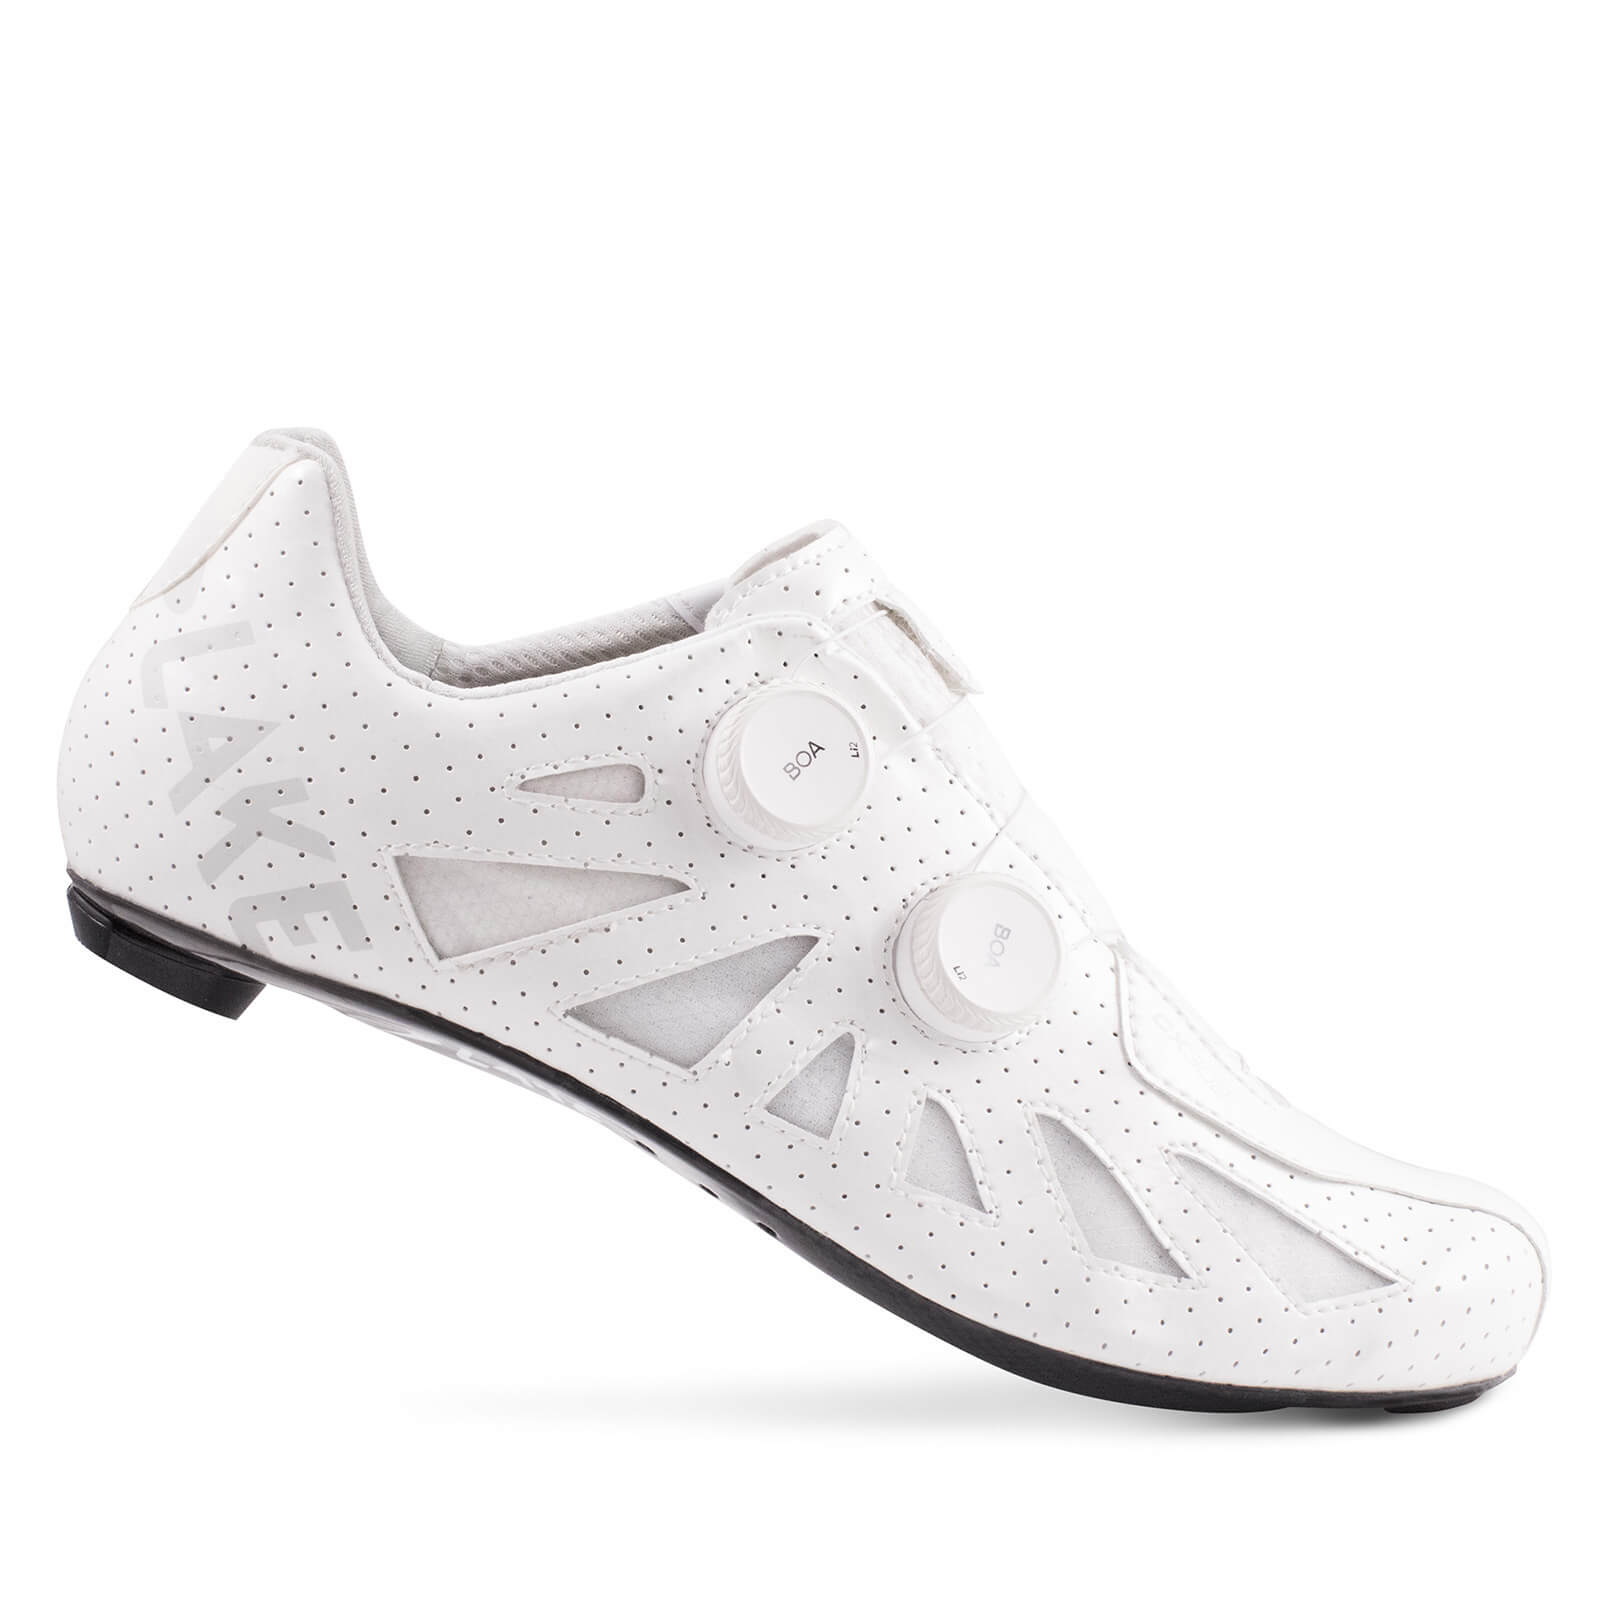 Lake CX302 Road Shoes - EU45 - White